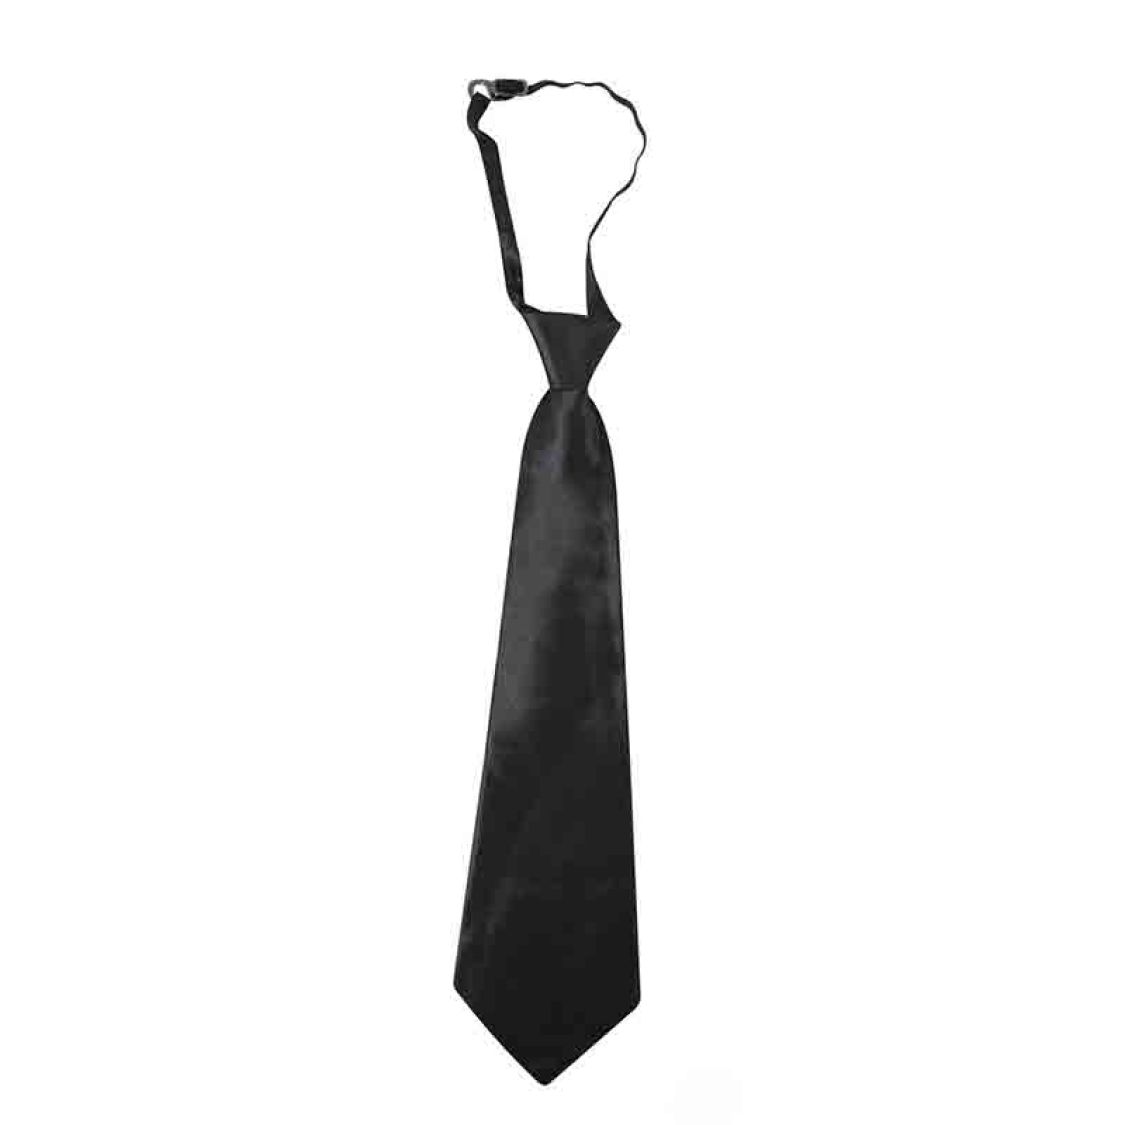 Cravate avec élastique noire